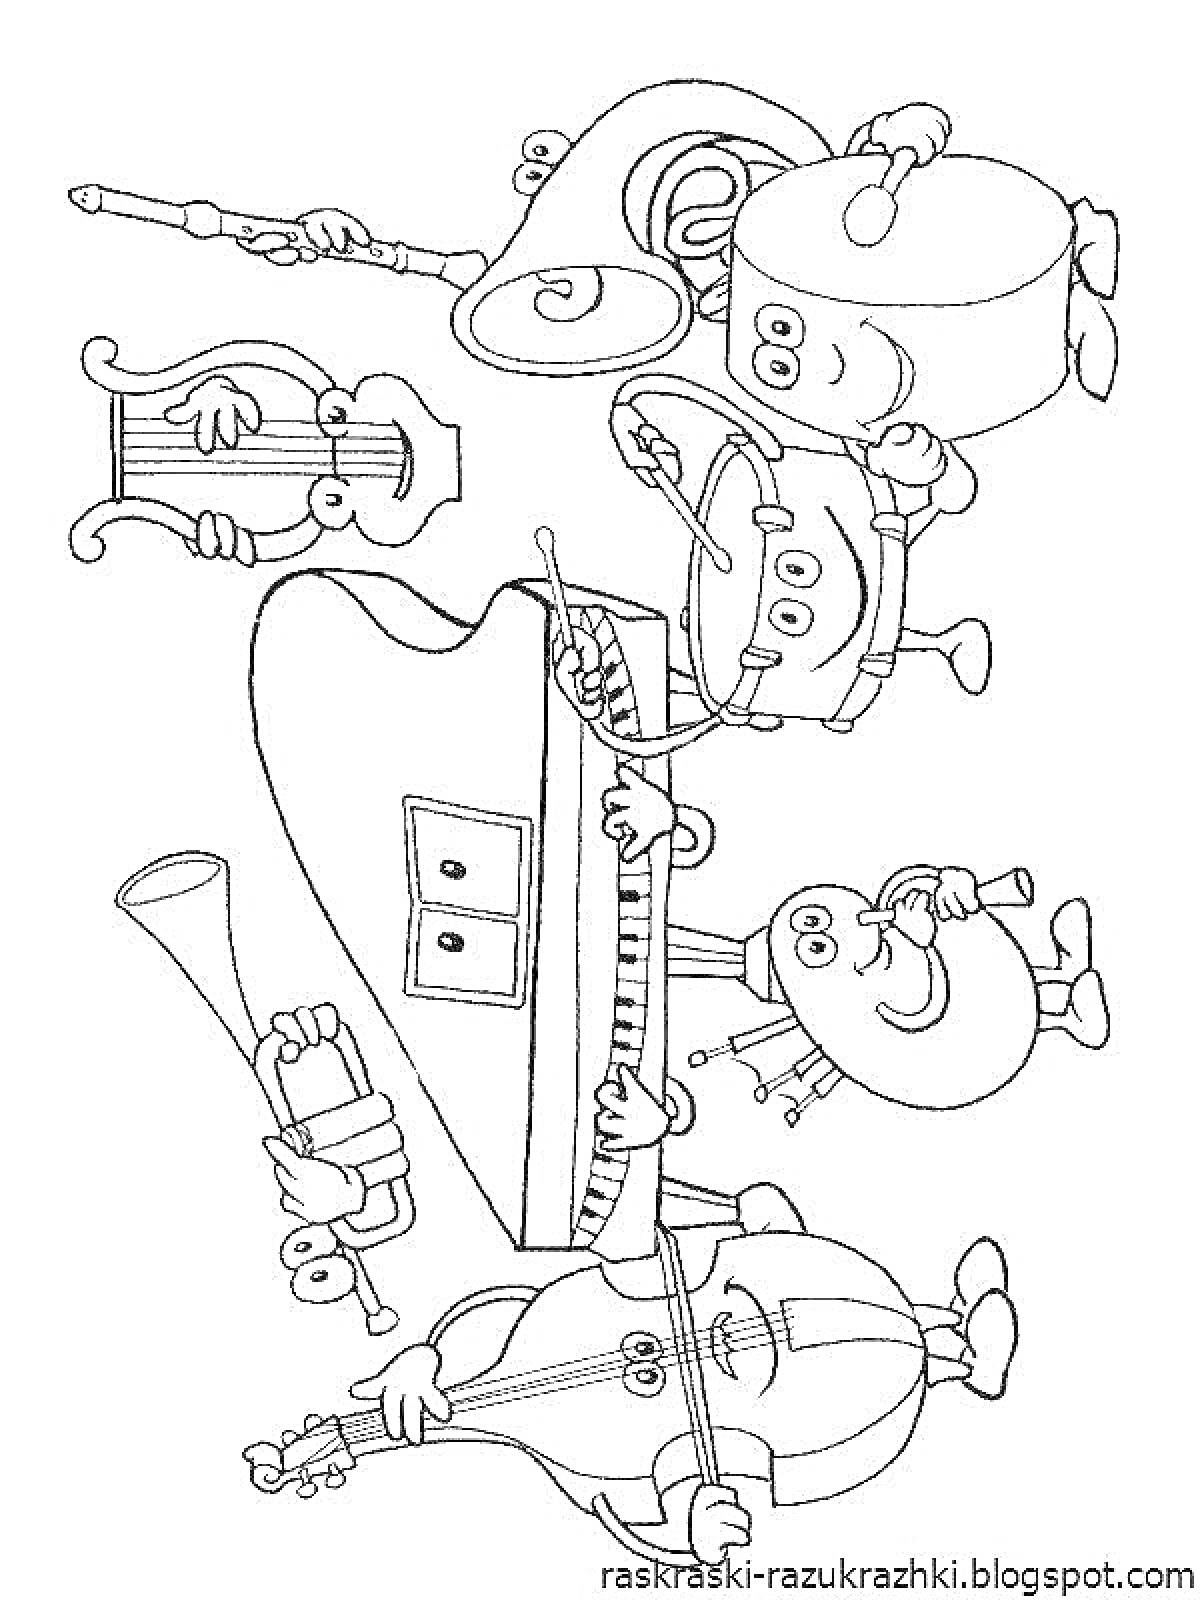 Раскраска Музыкальный оркестр из детских инструментов - рояль, барабан, скрипка, труба, контрабас, литавры